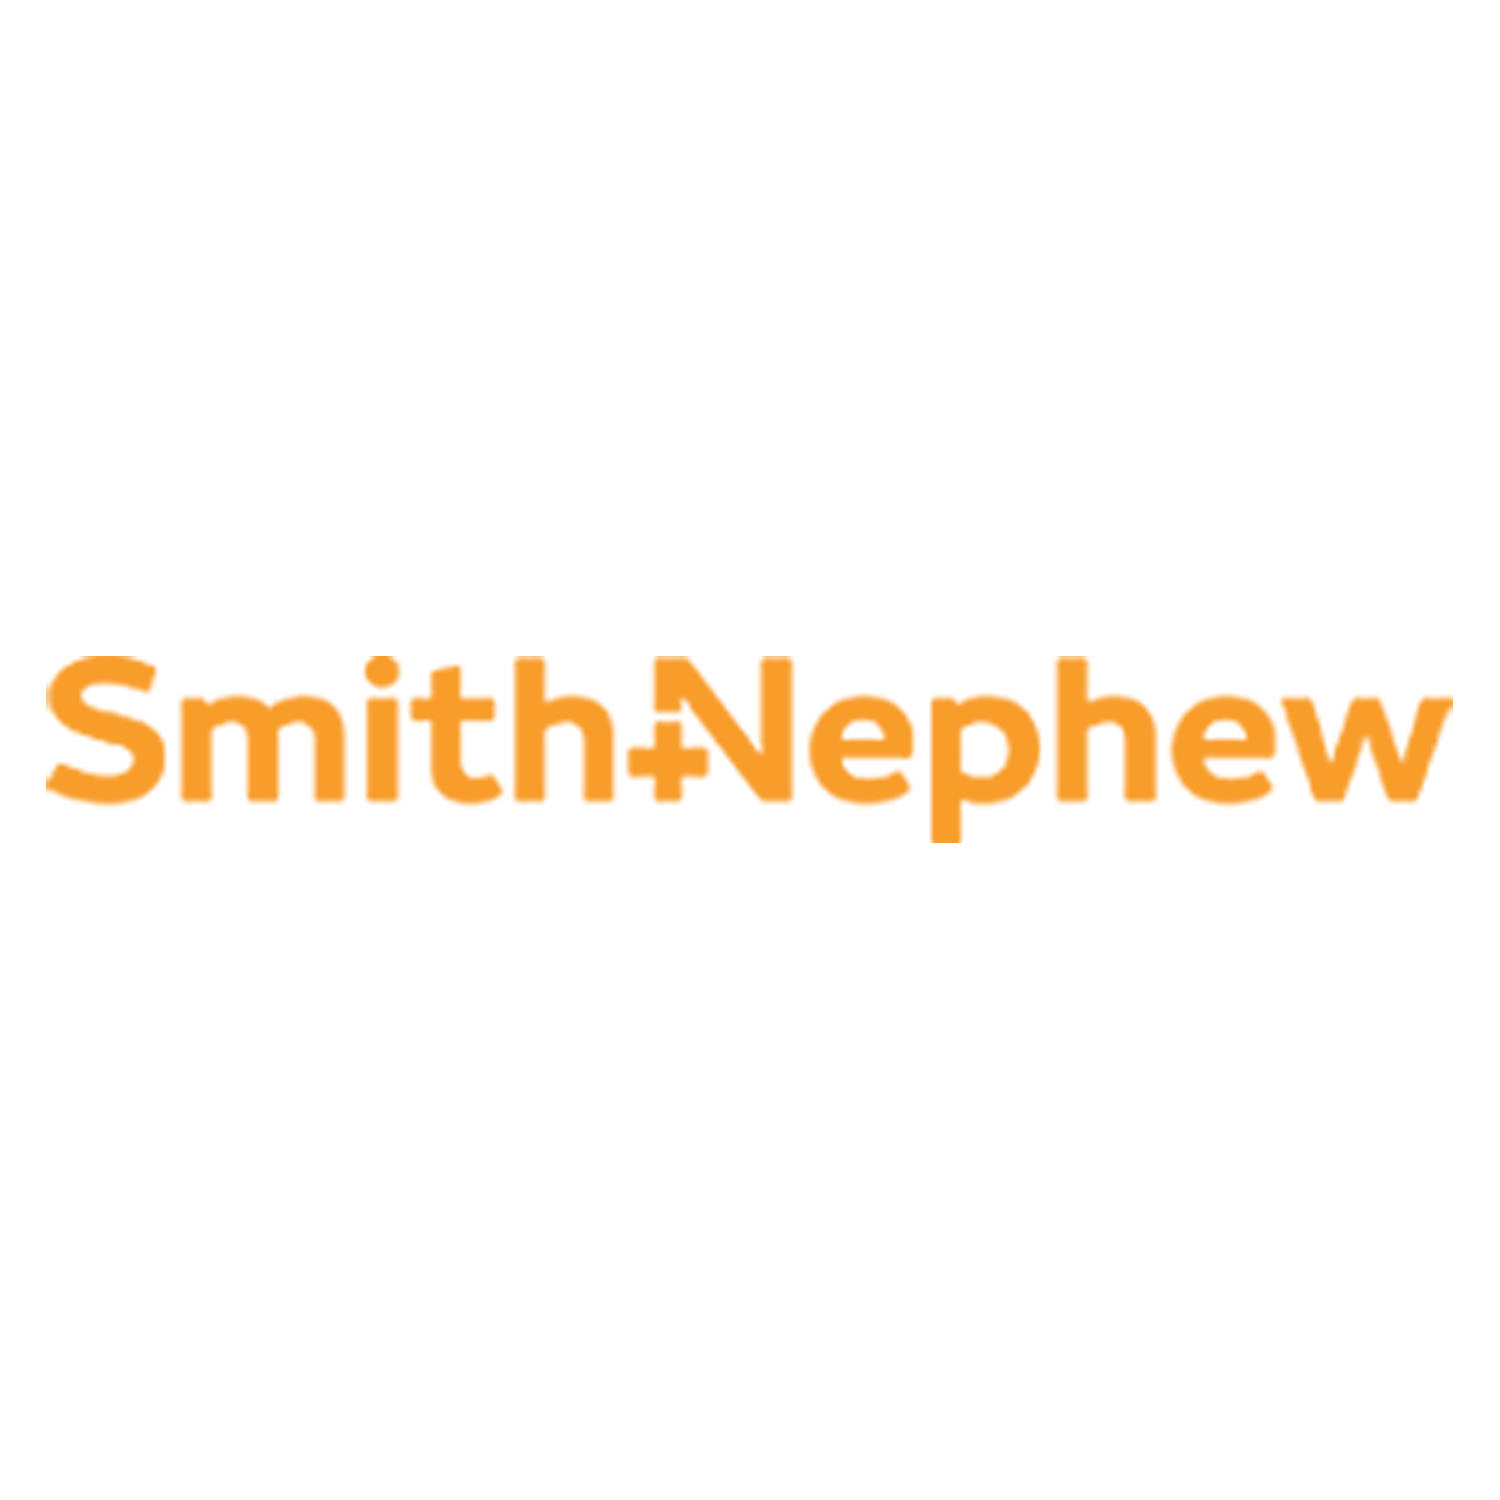 Go to brand page Smith + Nephew